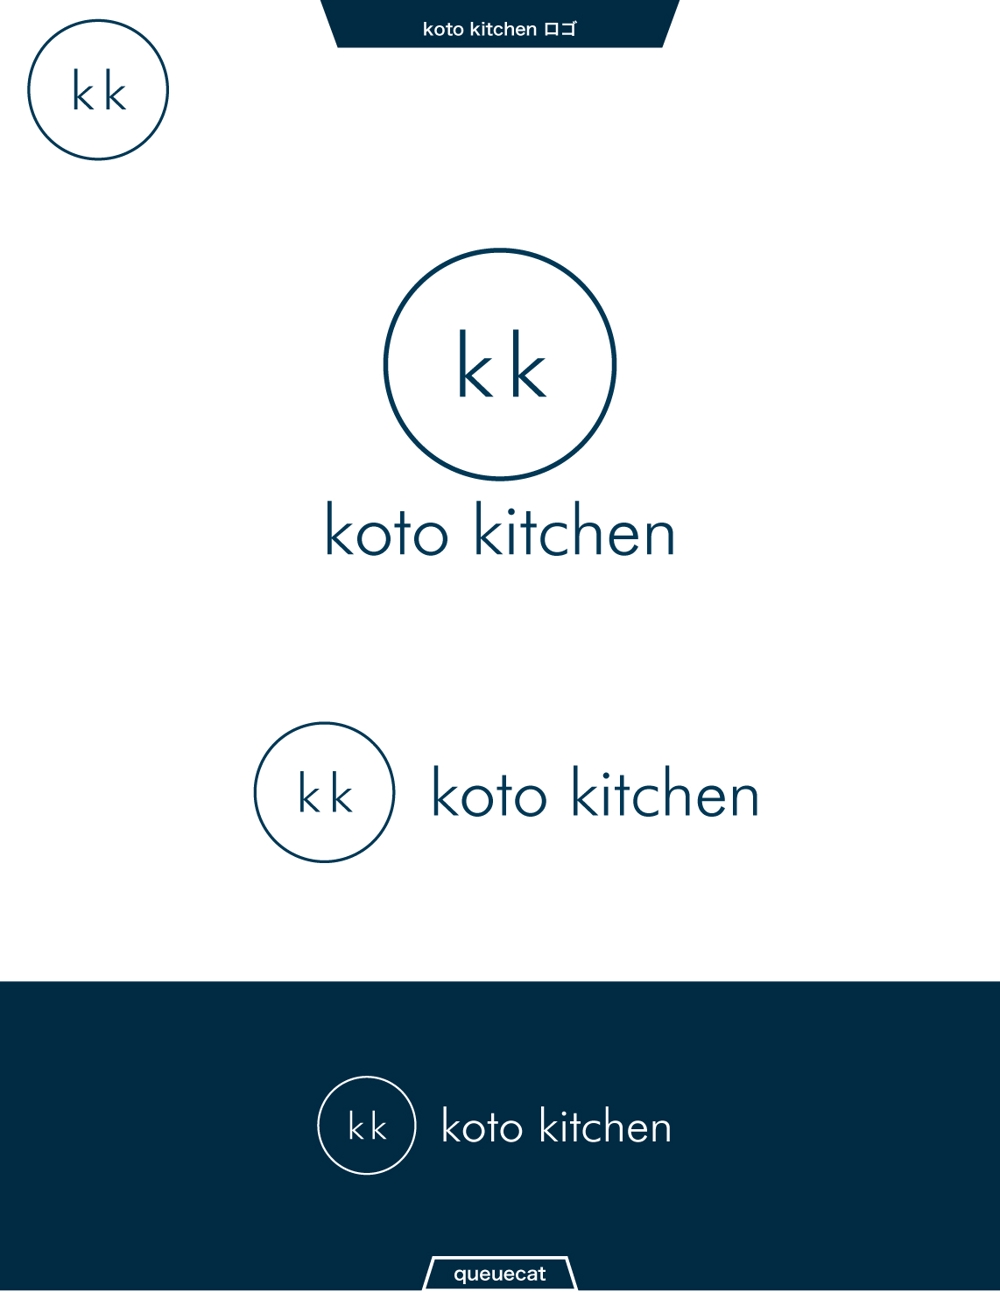 koto kitchen1_1.jpg